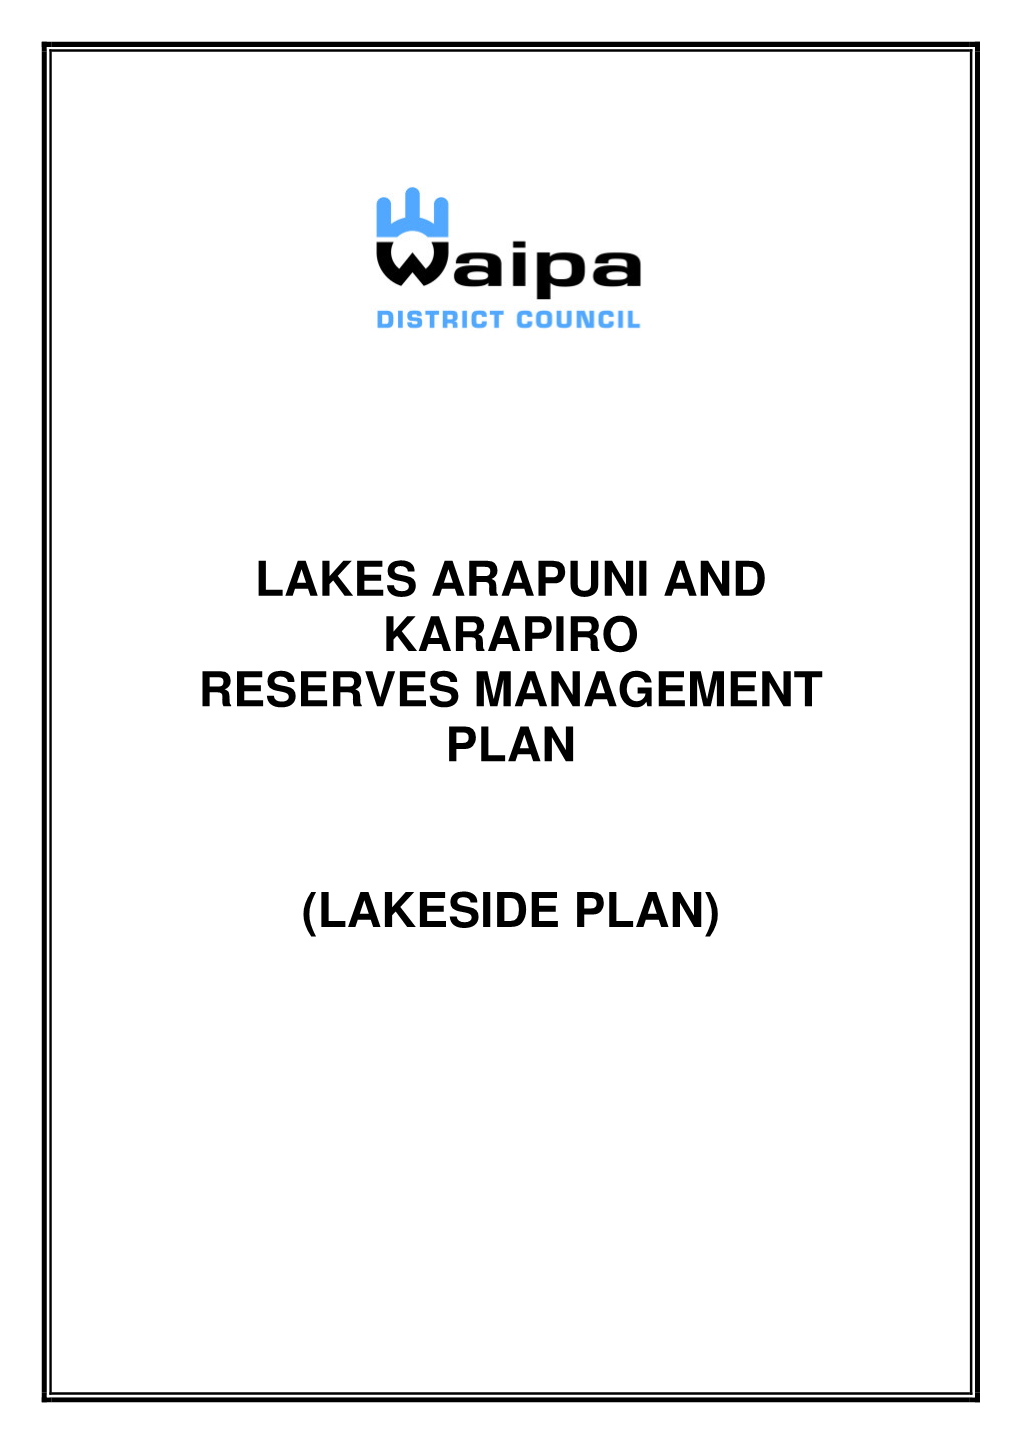 Lakes Arapuni and Karapiro Reserves Management Plan (Lakeside Plan)